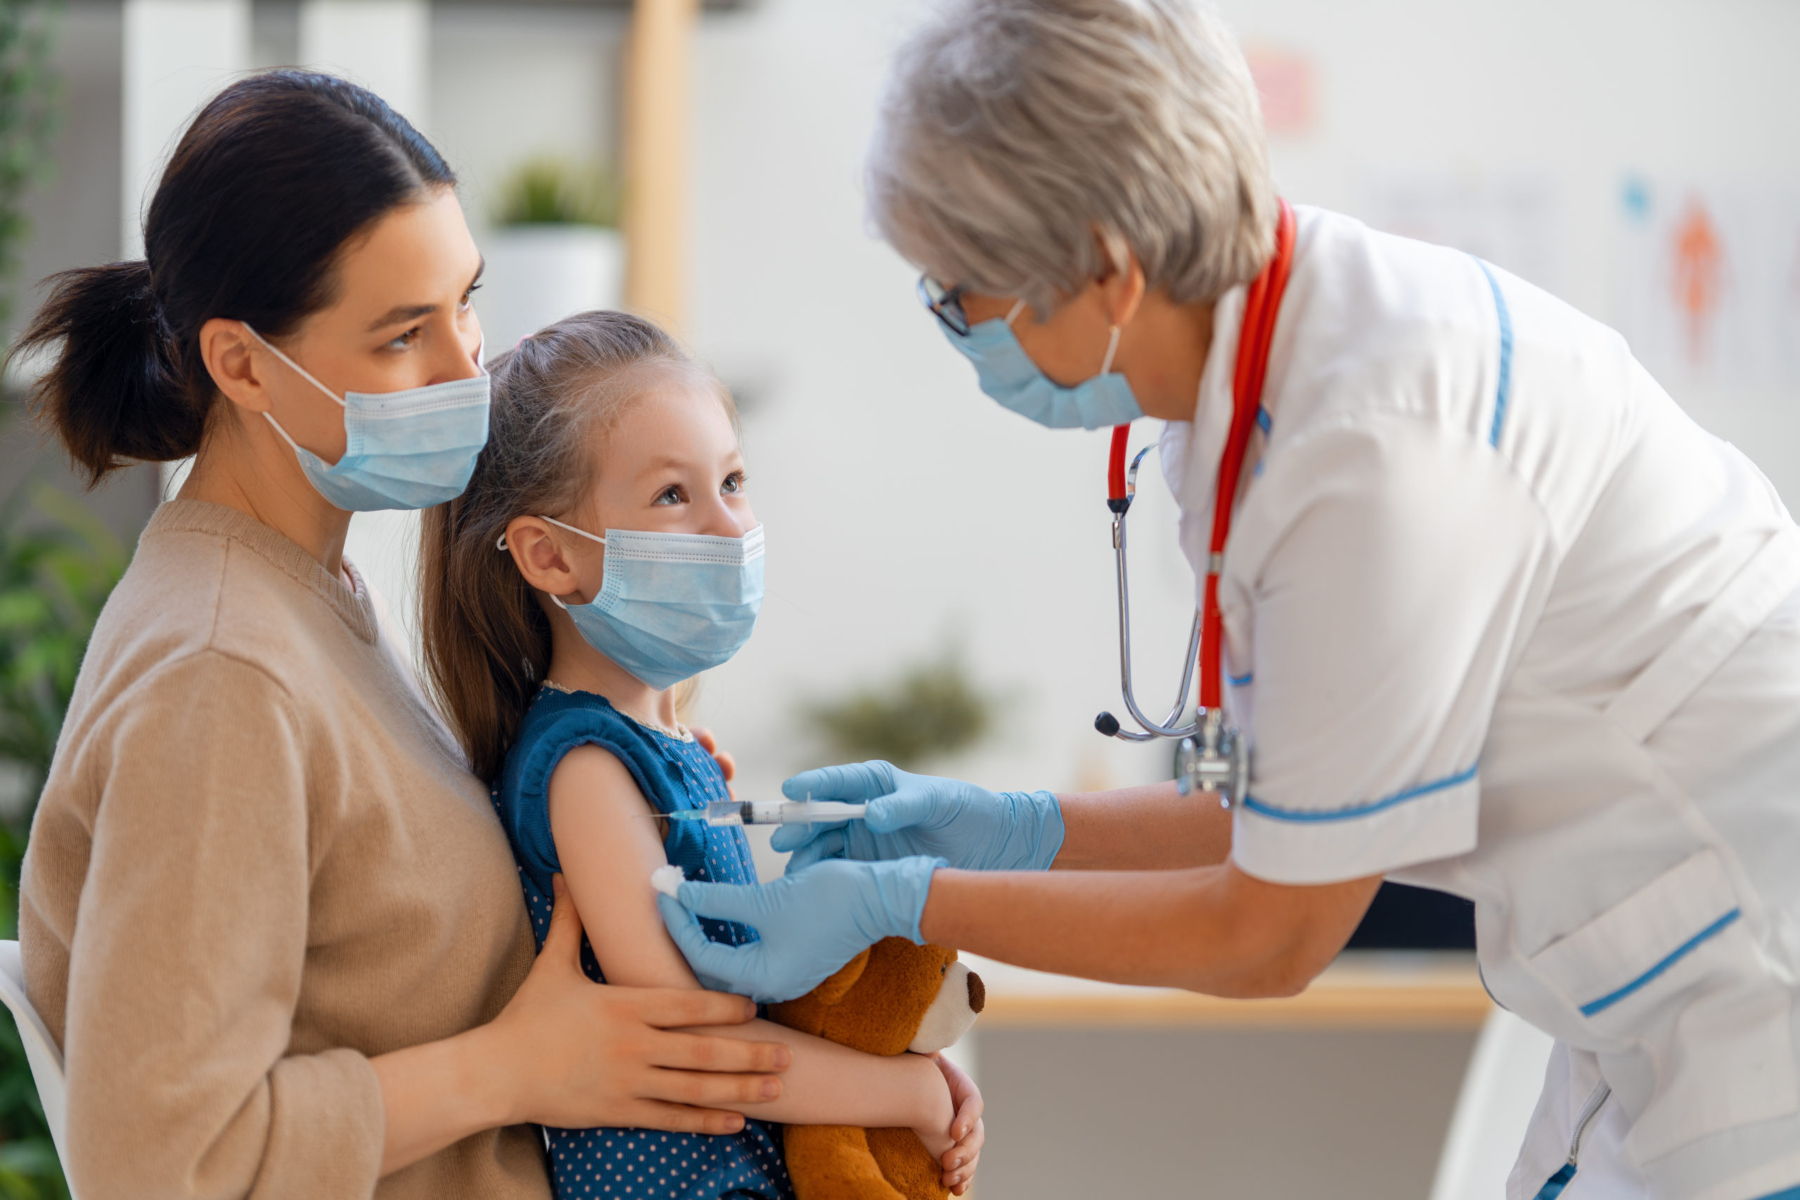 ΠΟΥ: Δεν είναι απαραίτητος ο επιπλέον εμβολιασμός για Covid σε υγιή παιδιά